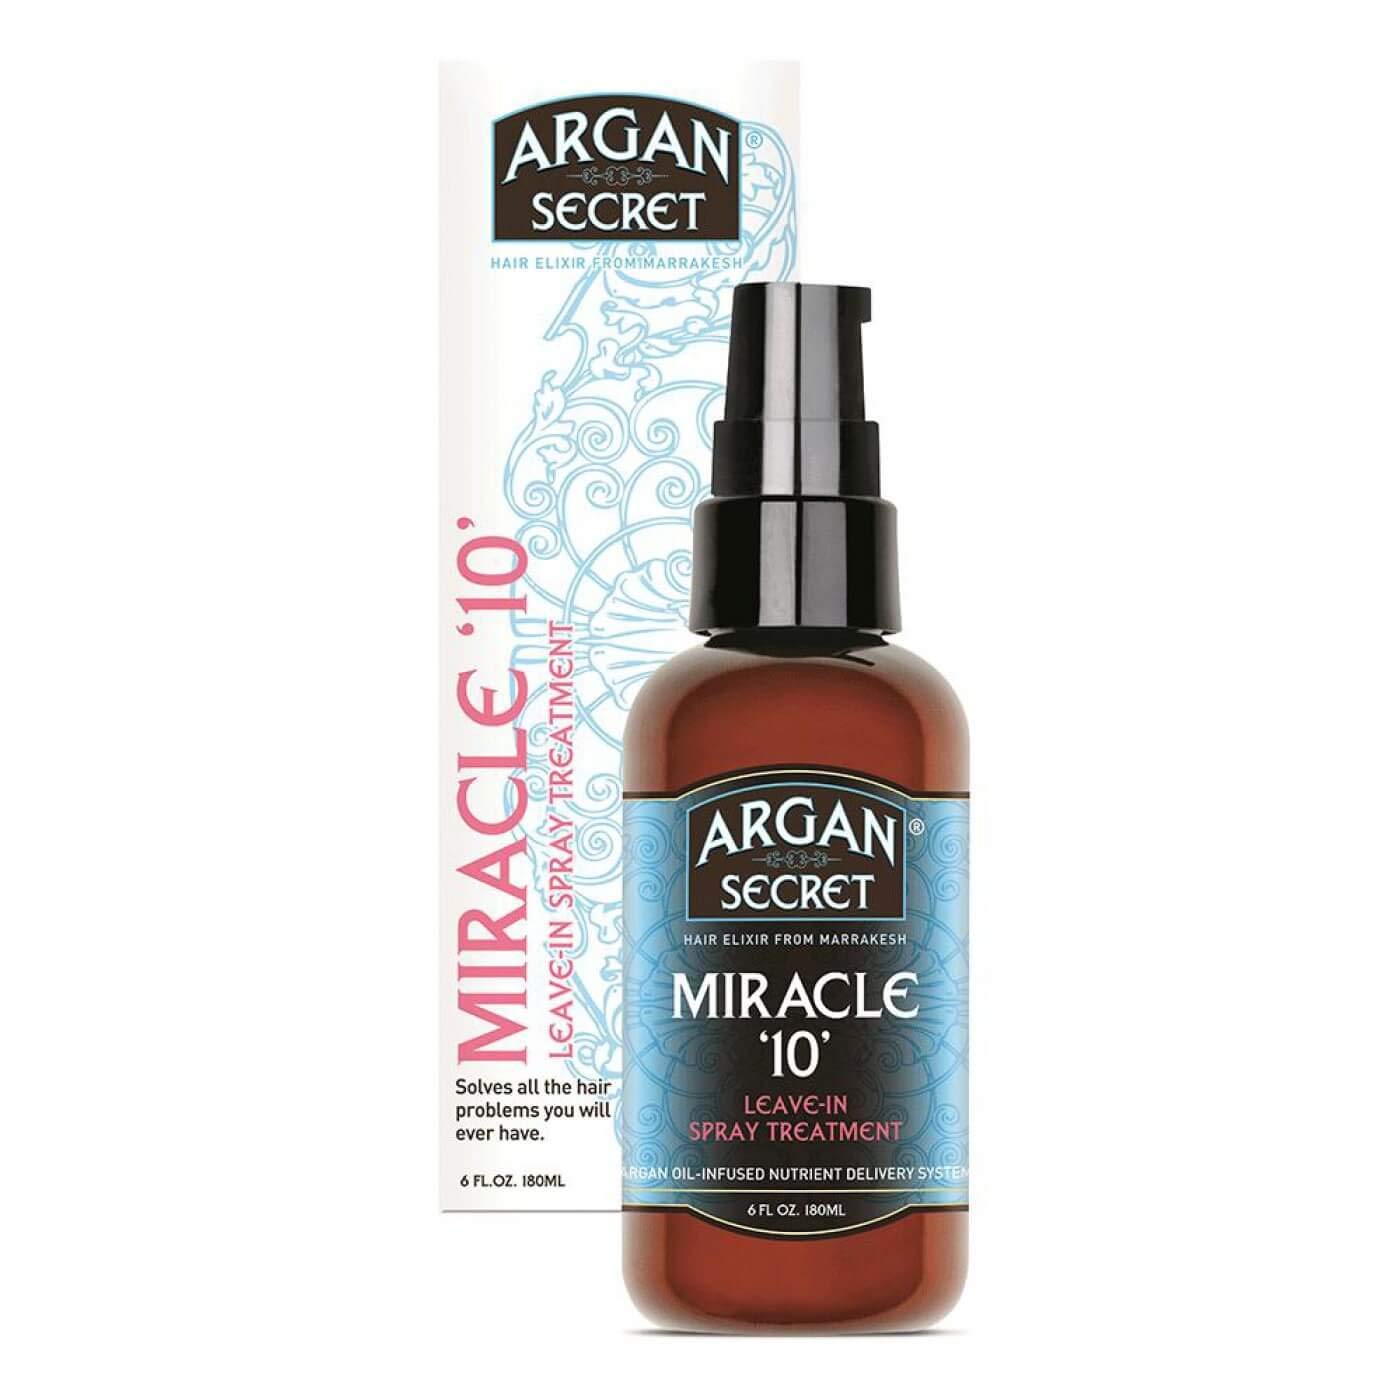 ARGAN SECRET Miracle 10 Leave in TRTM 180 ml